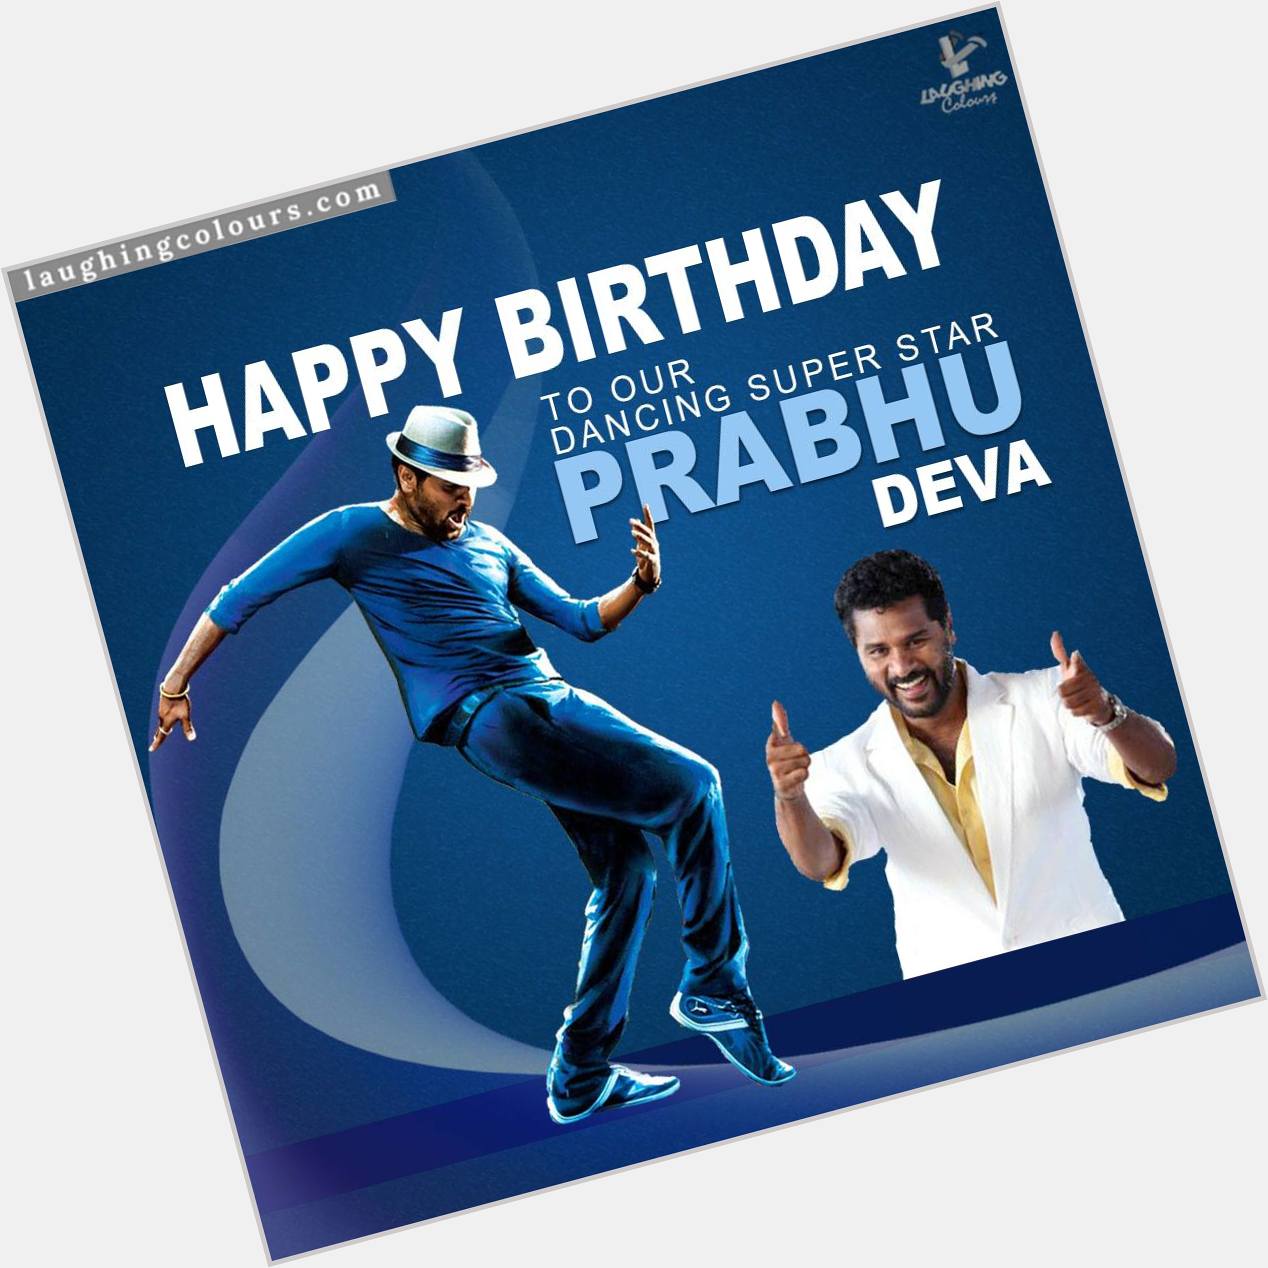 Wishing Prabhu Deva
A Very Happy Birthday grin emoticon 